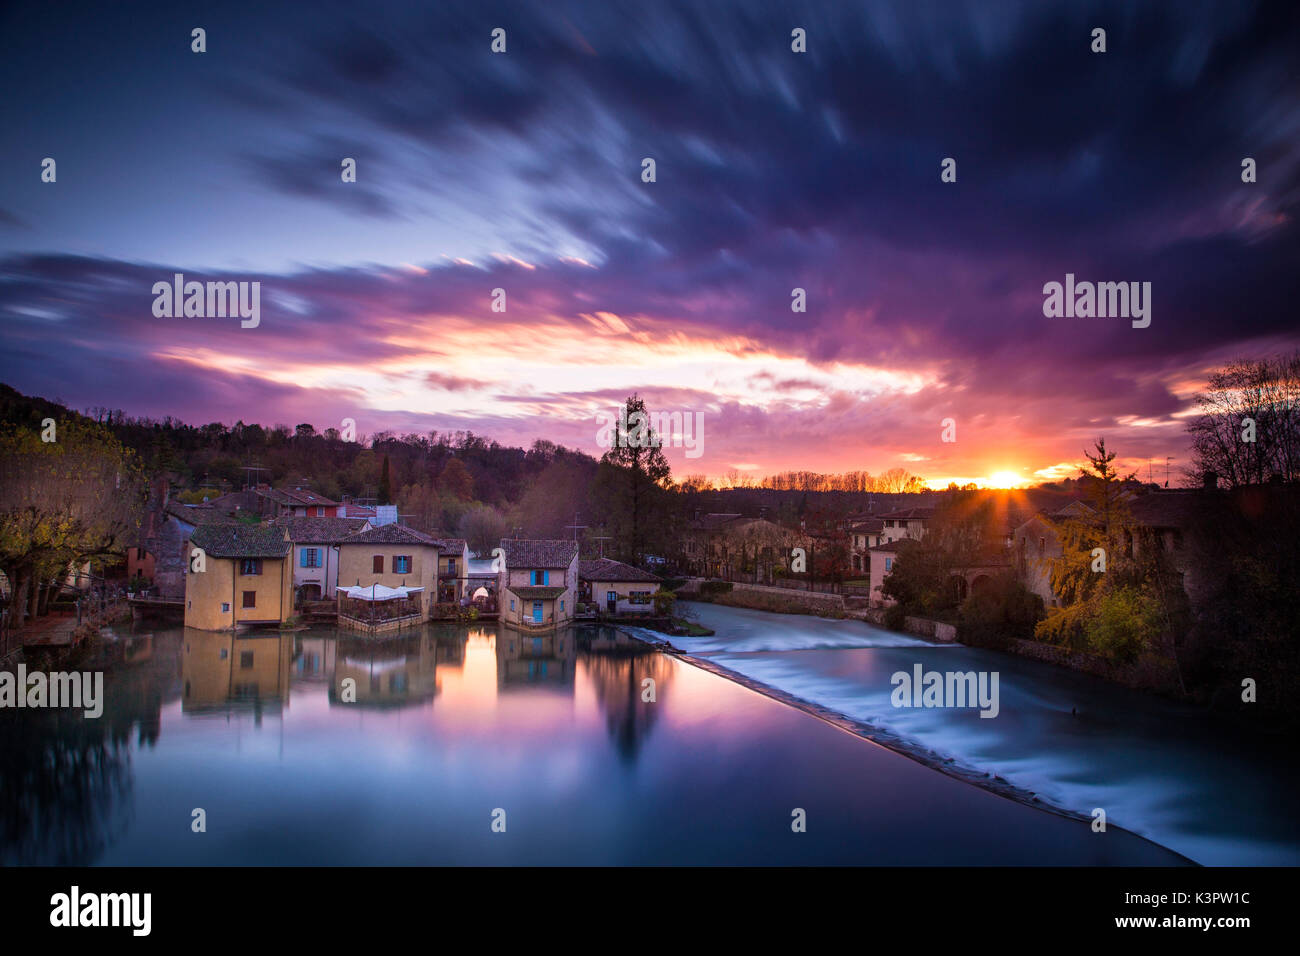 Valeggio sul Mincio, Veneto, Italy. Landscape view of the village during a colorful sunset. Stock Photo